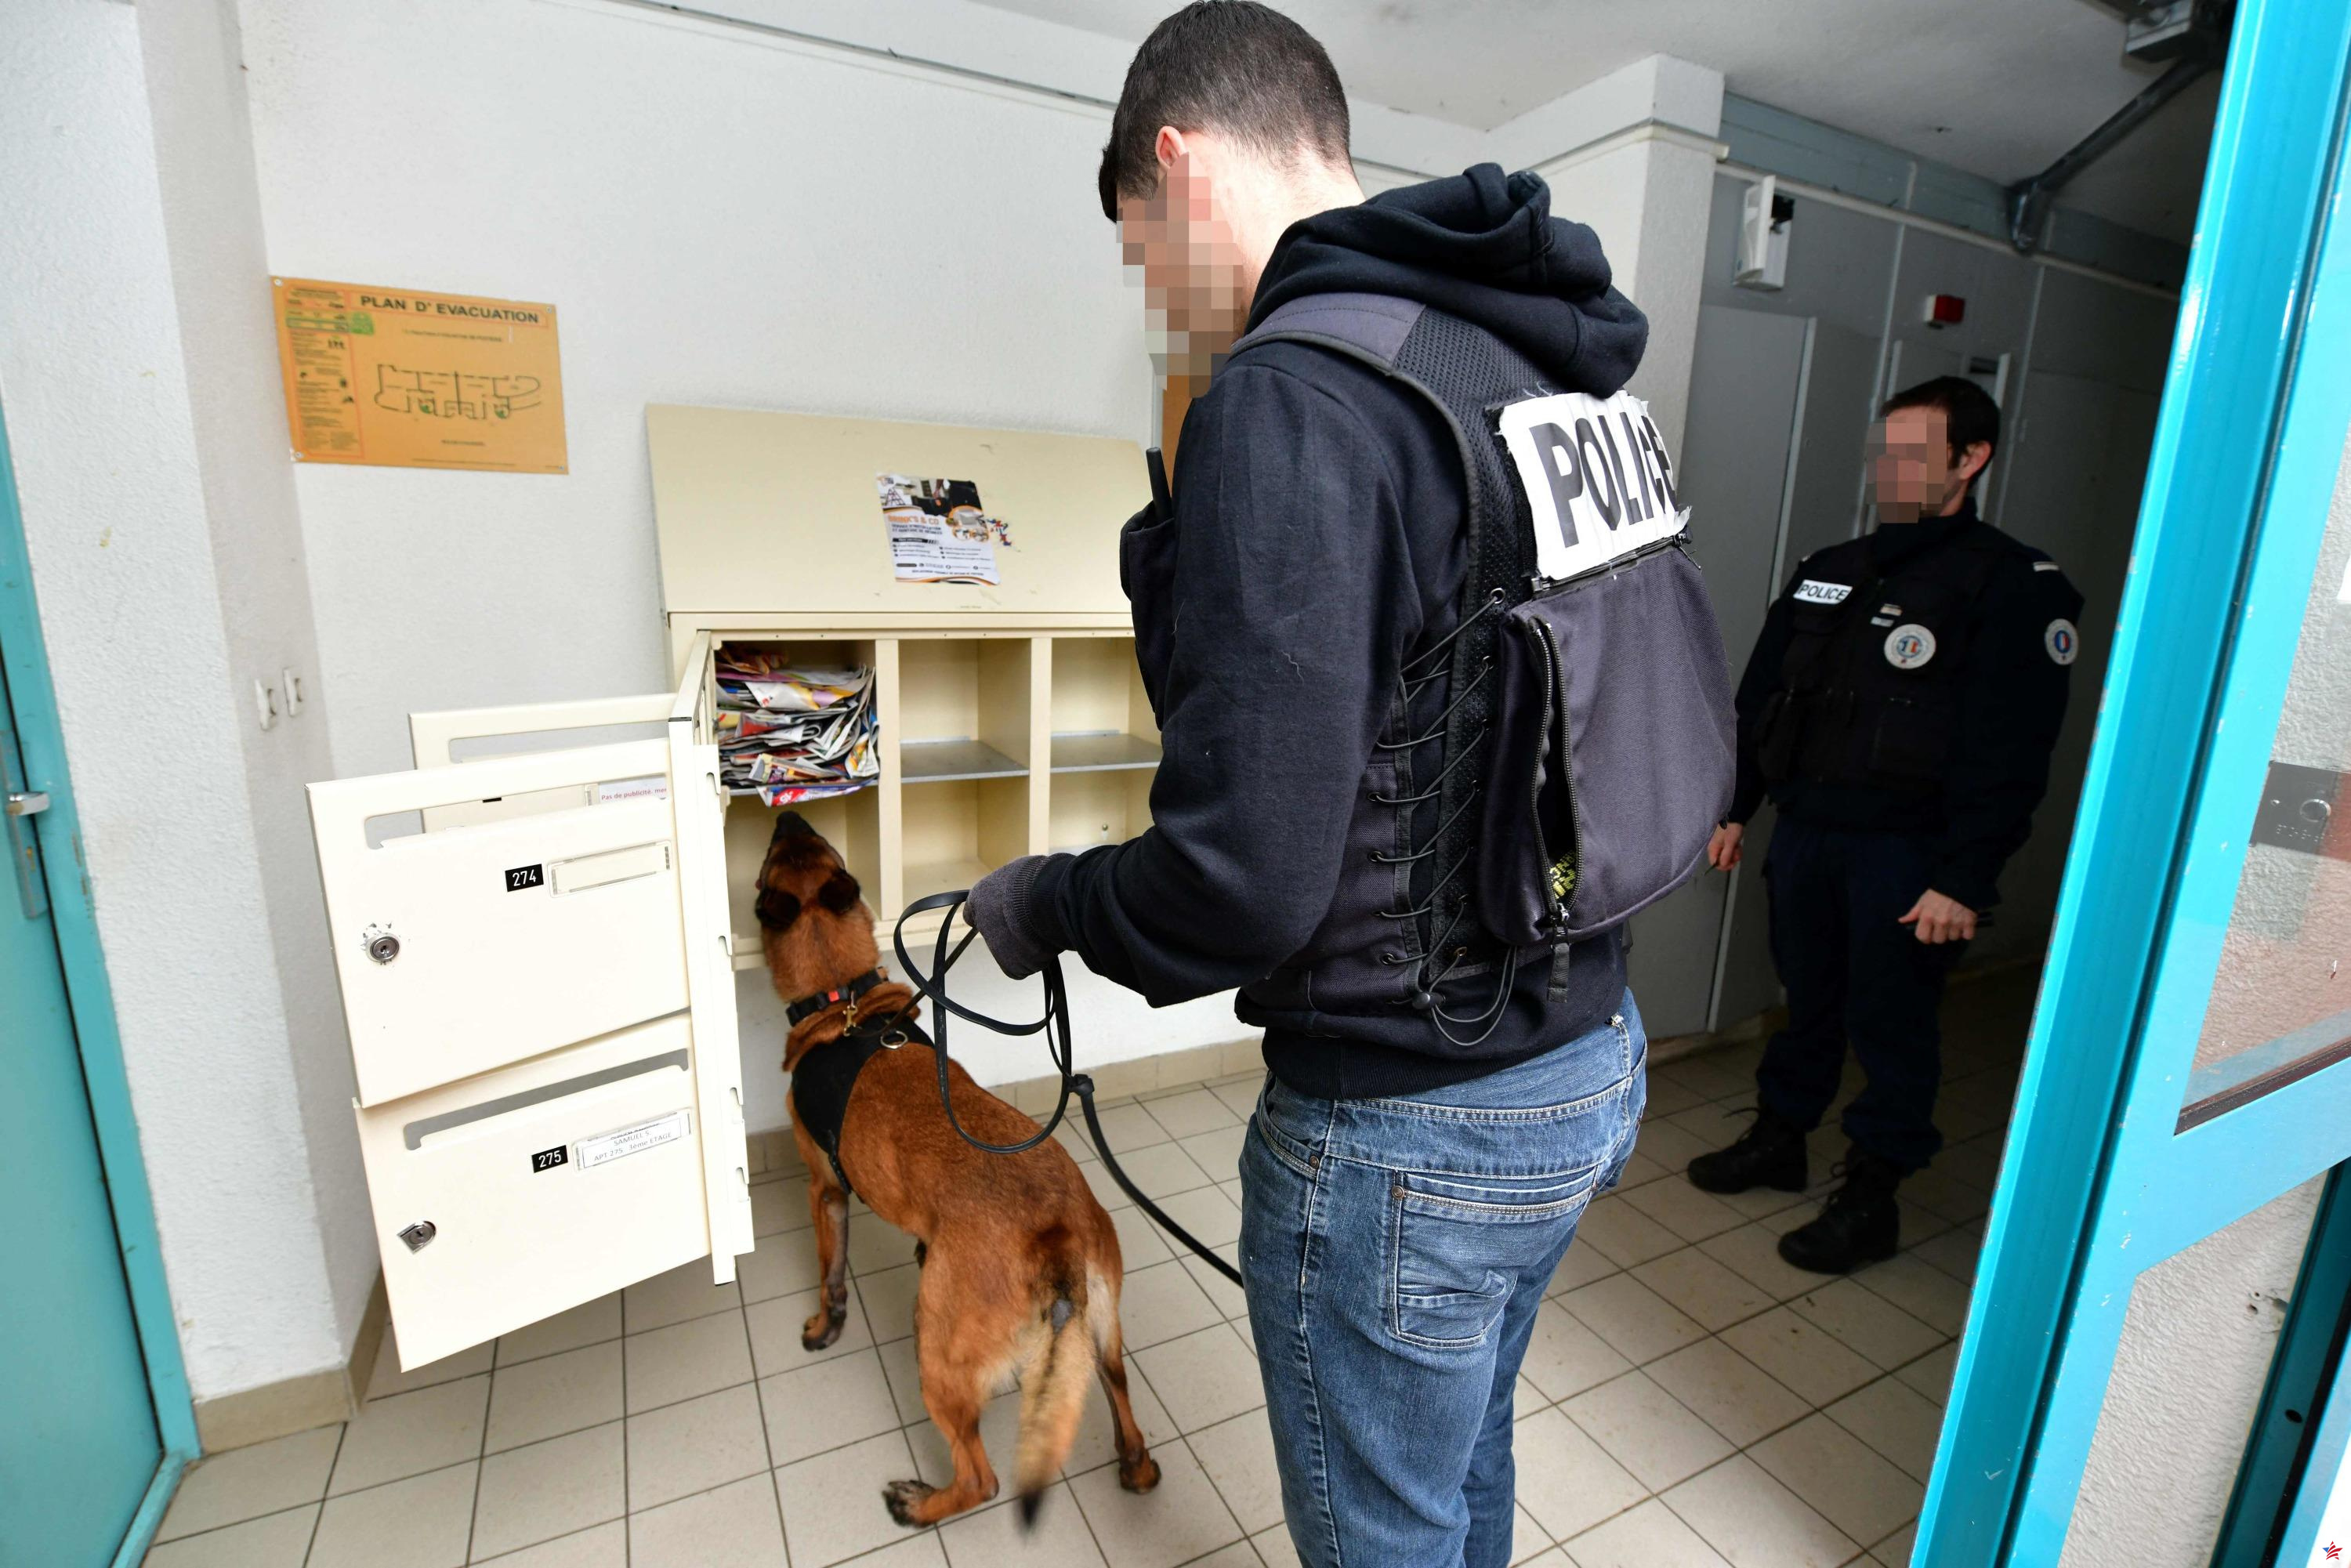 Operación “espacio limpio” en Besançon: una “niñera” condenada a dos años de prisión